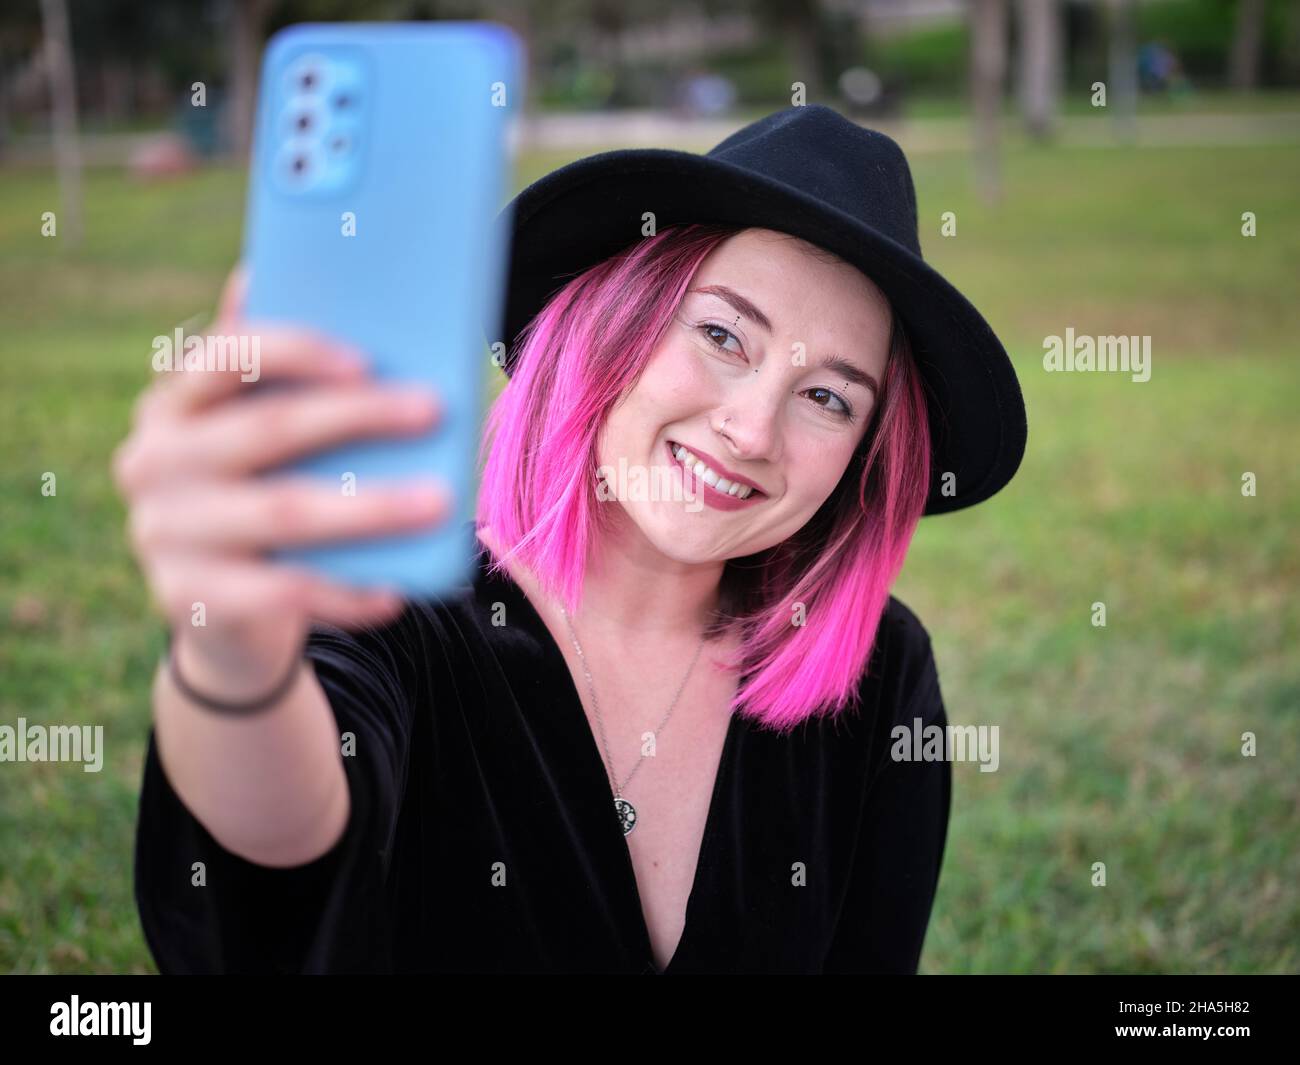 Frau mit schwarzem Hut und rosafarbenem Haar beim Selfie im Park Stockfoto